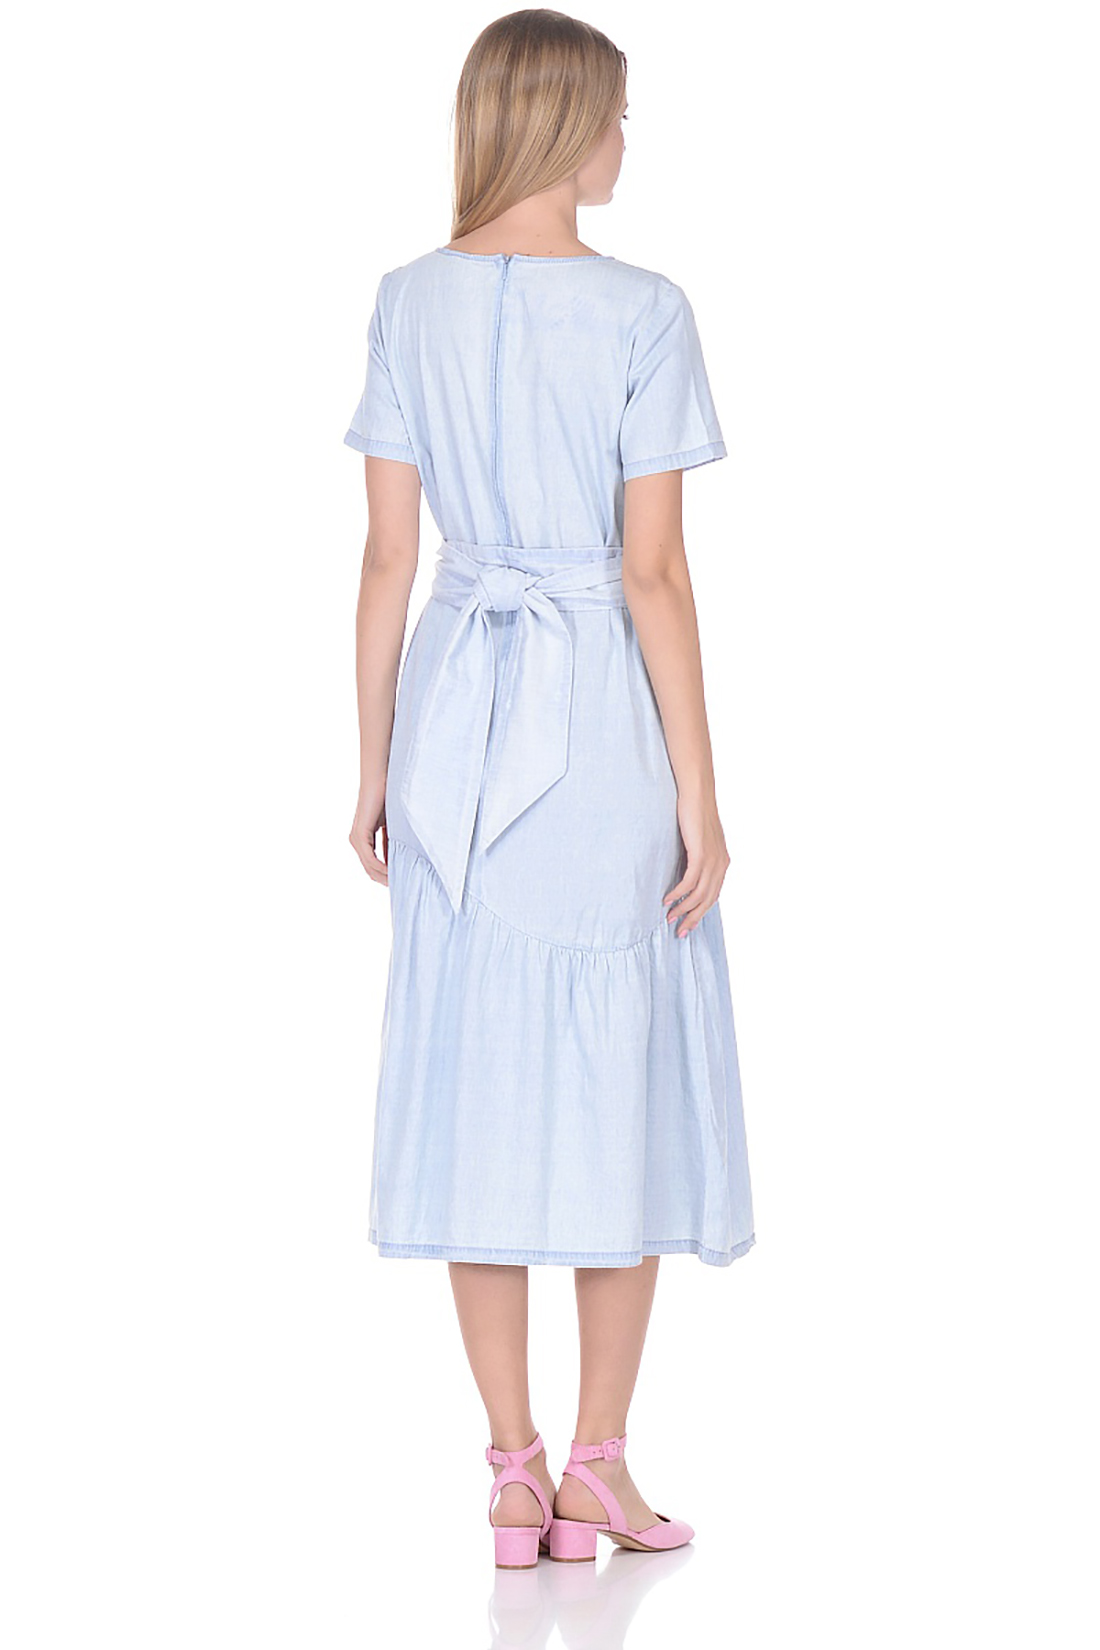 Платье с асимметричной оборкой (арт. baon B458079), размер 3XL, цвет light blue denim#голубой Платье с асимметричной оборкой (арт. baon B458079) - фото 2